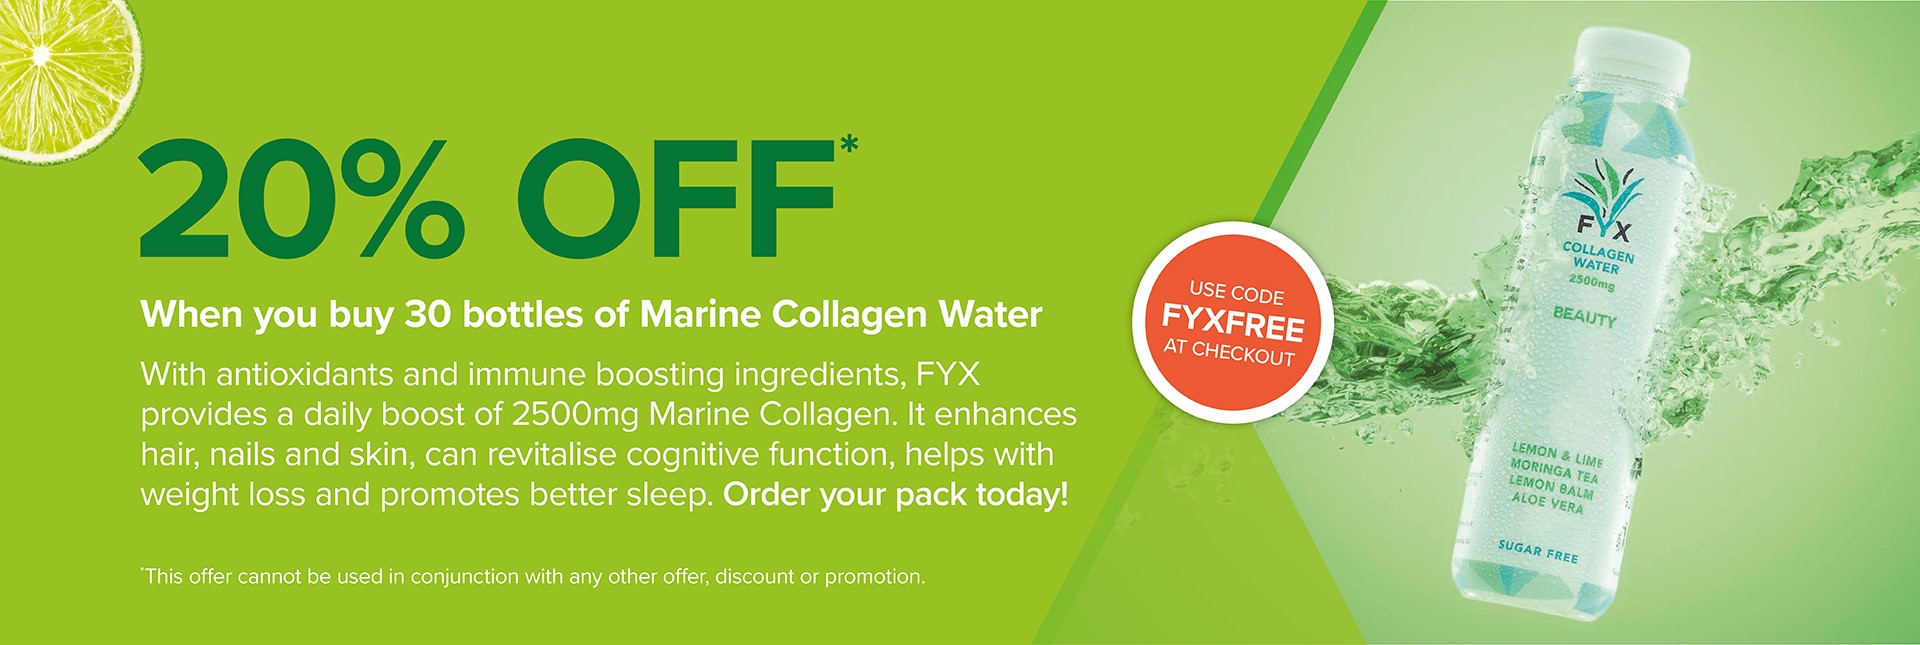 FYX Marine Collagen Water bottle 1